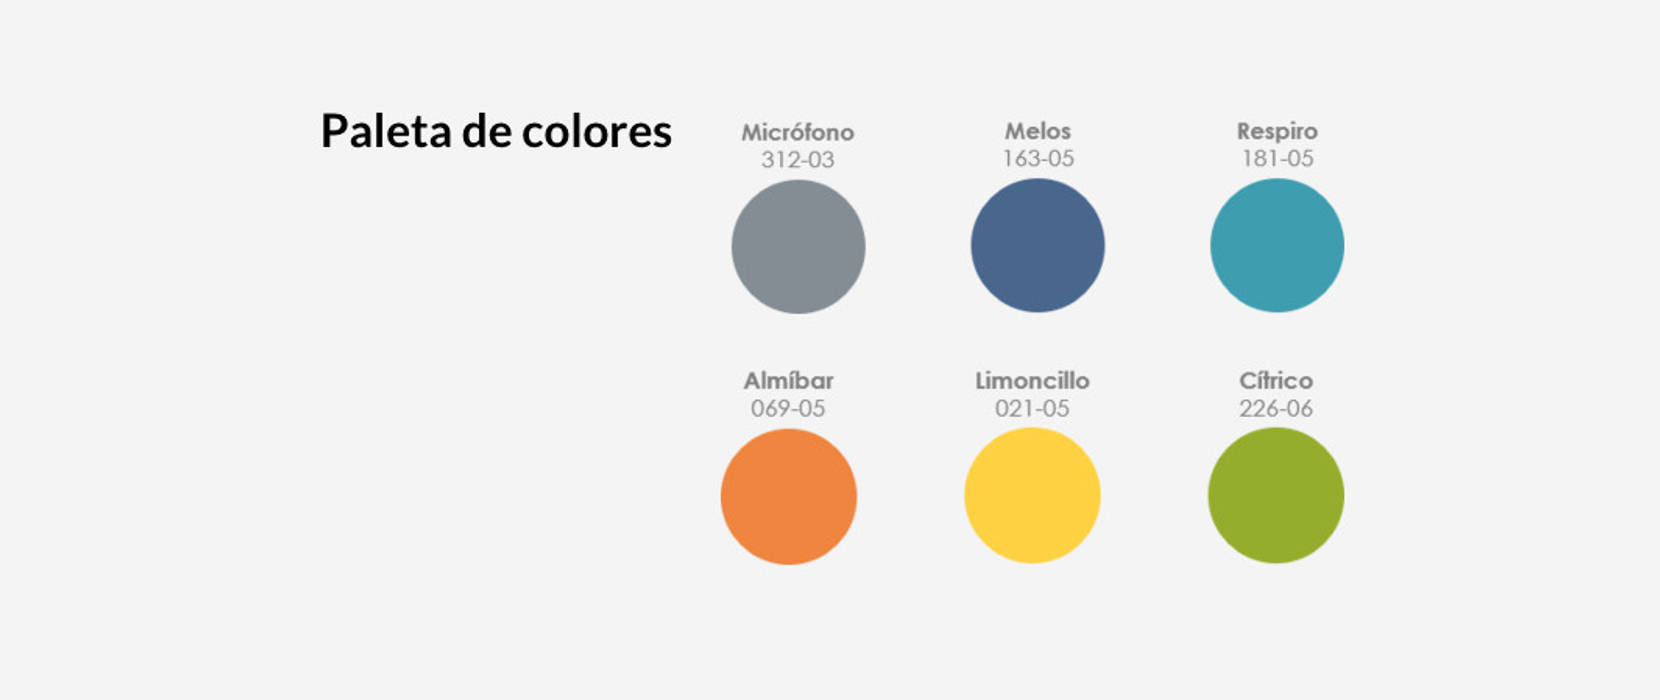 Paletas de colores: de estilo industrial por MARIANGEL COGHLAN, Industrial paletas de colores